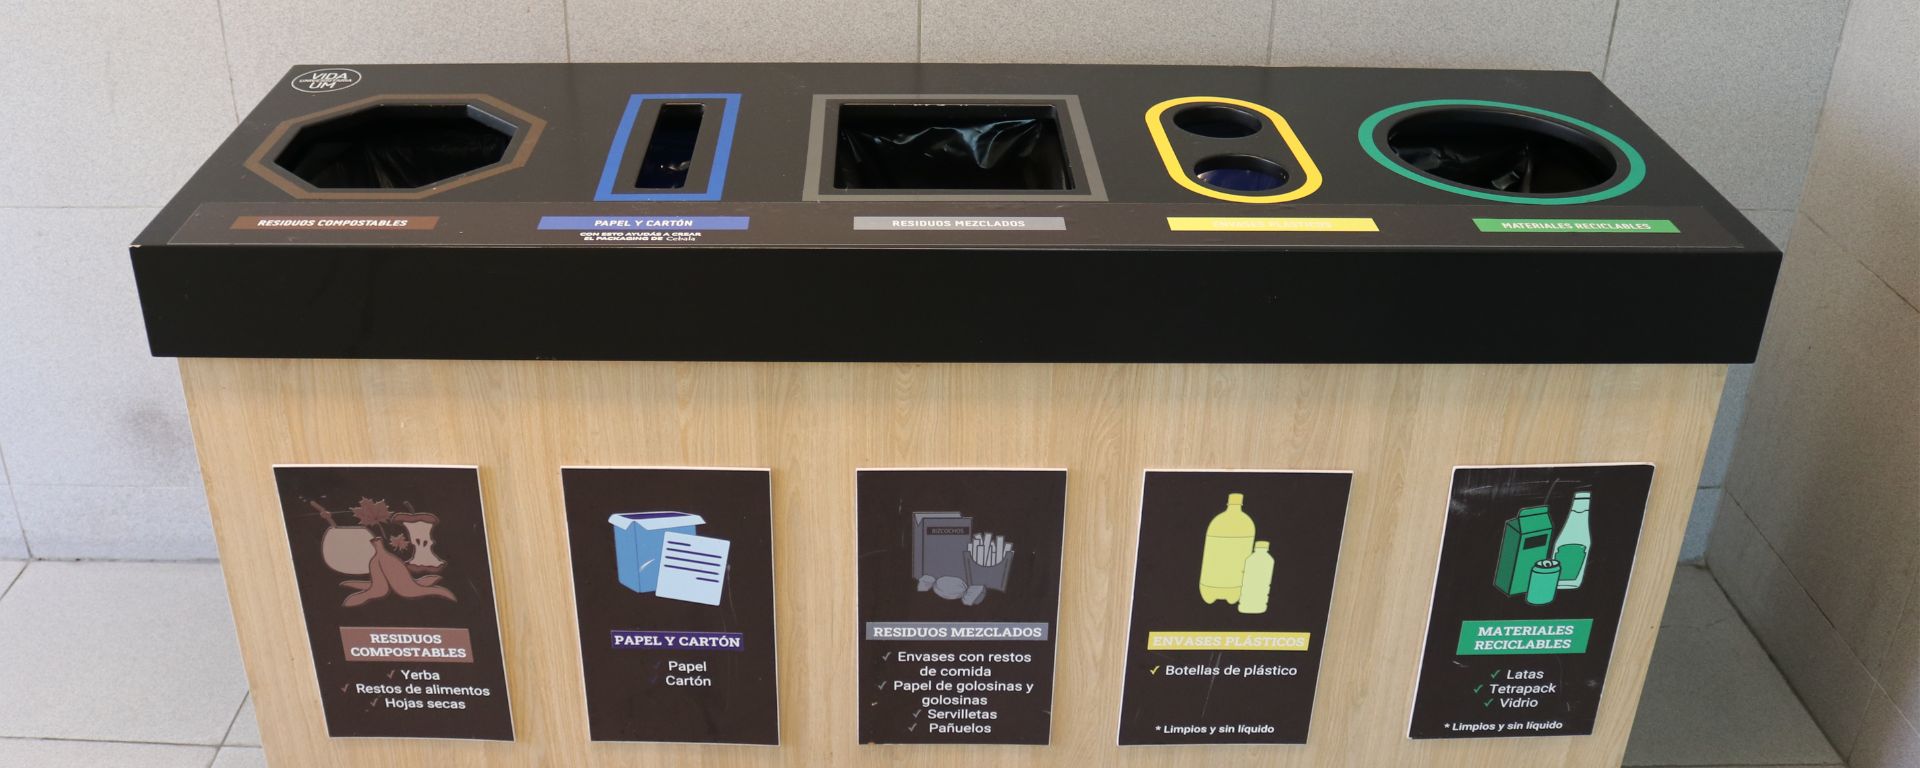 Fotografía de estación de residuos reciclados en la UM, con cinco clasificaciones